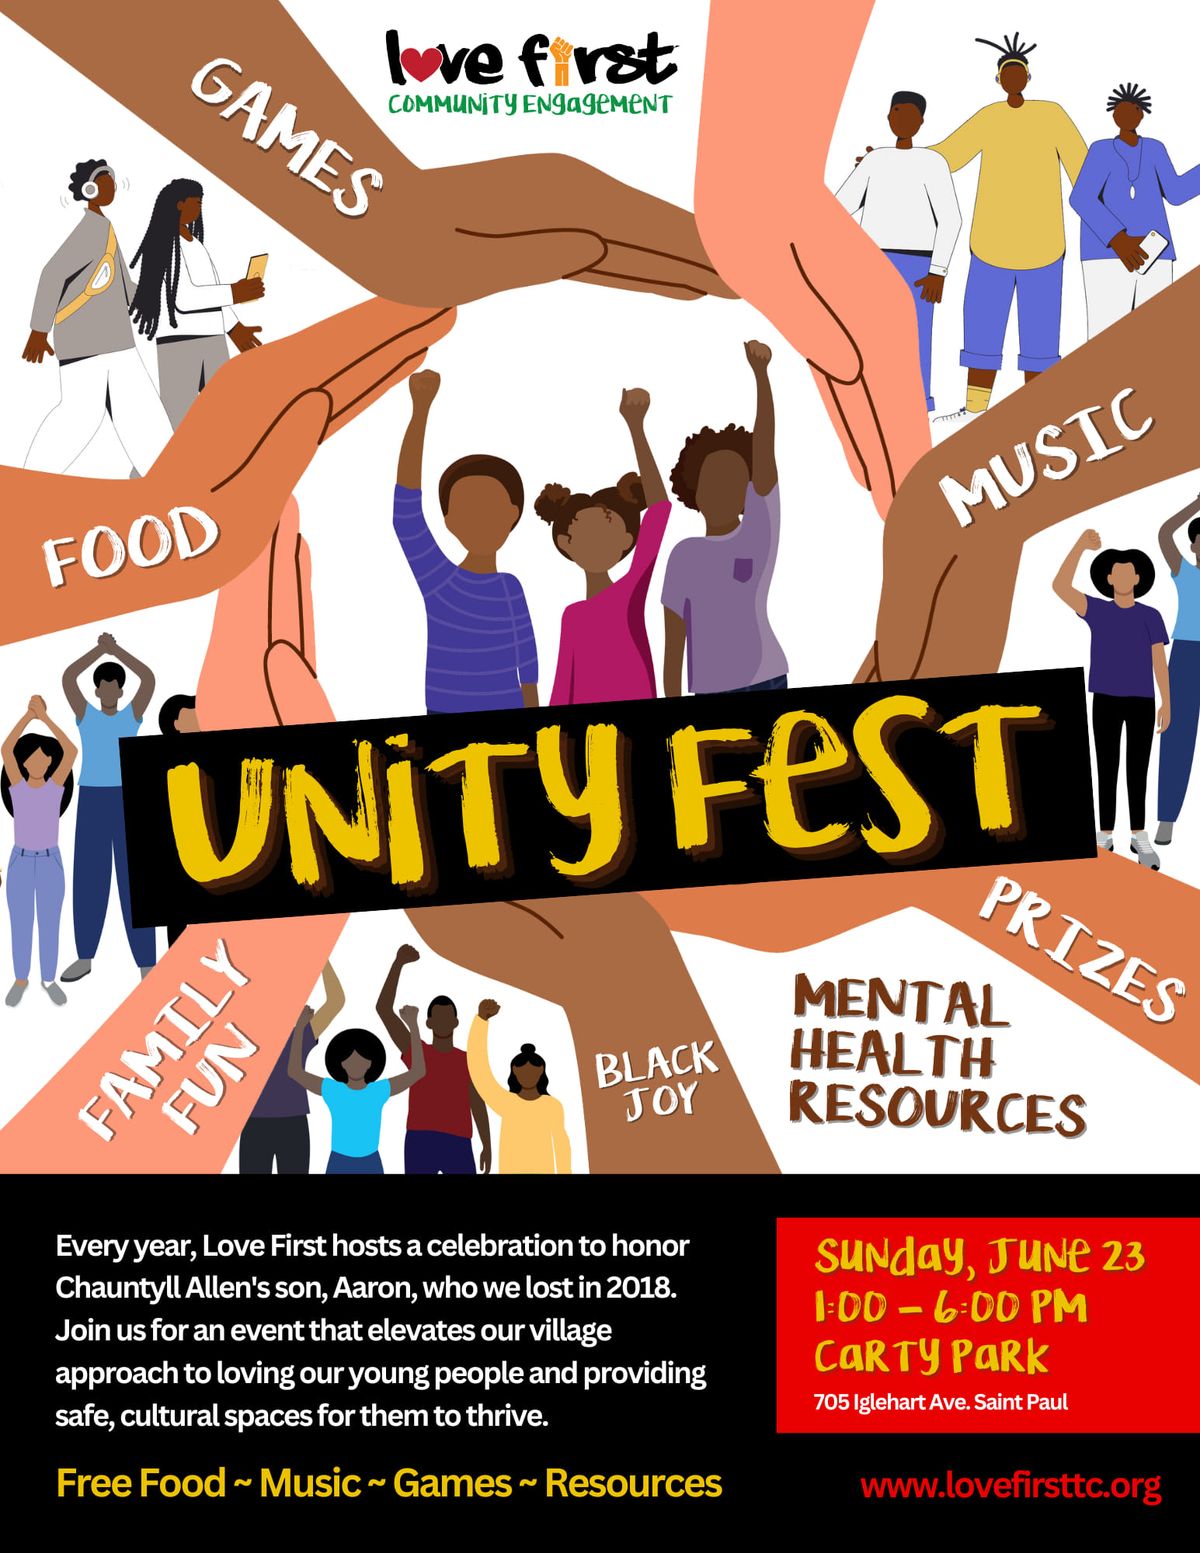 Unityfest 